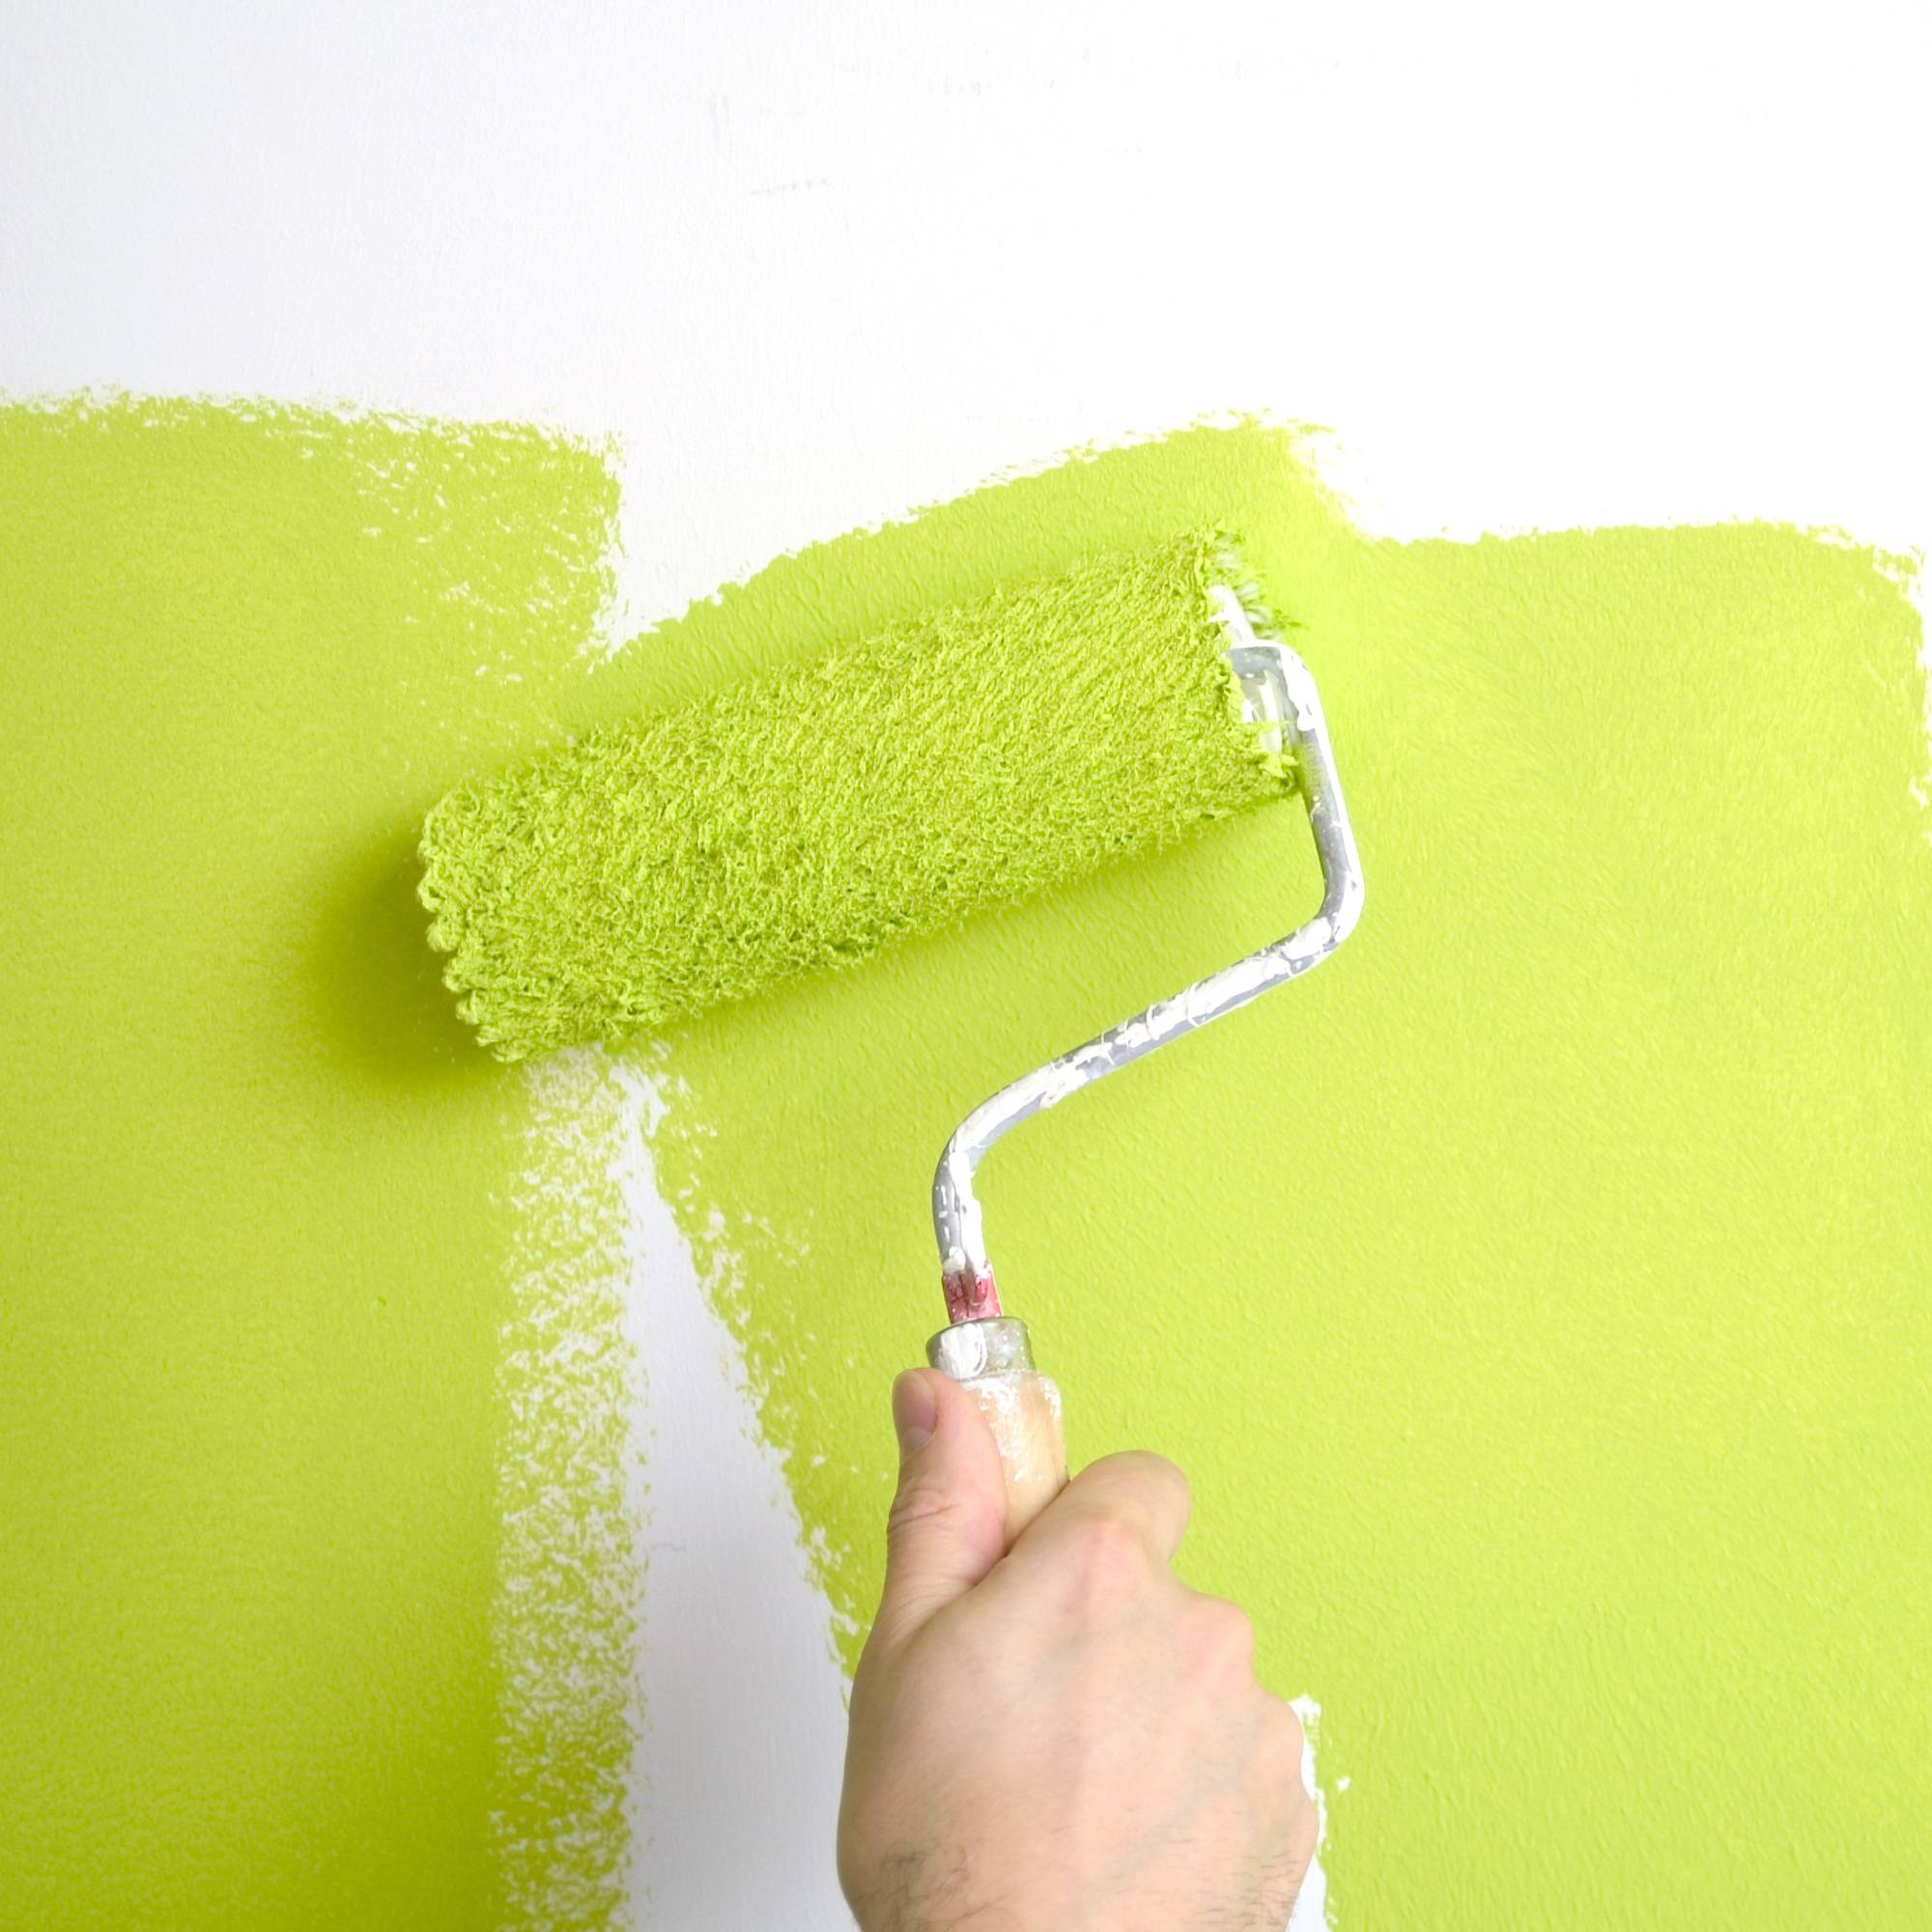 Краска для обоев: как красить под покраску на стене самостоятельно, можно ли покрасить на флизелиновой основе своими руками, какая лучше